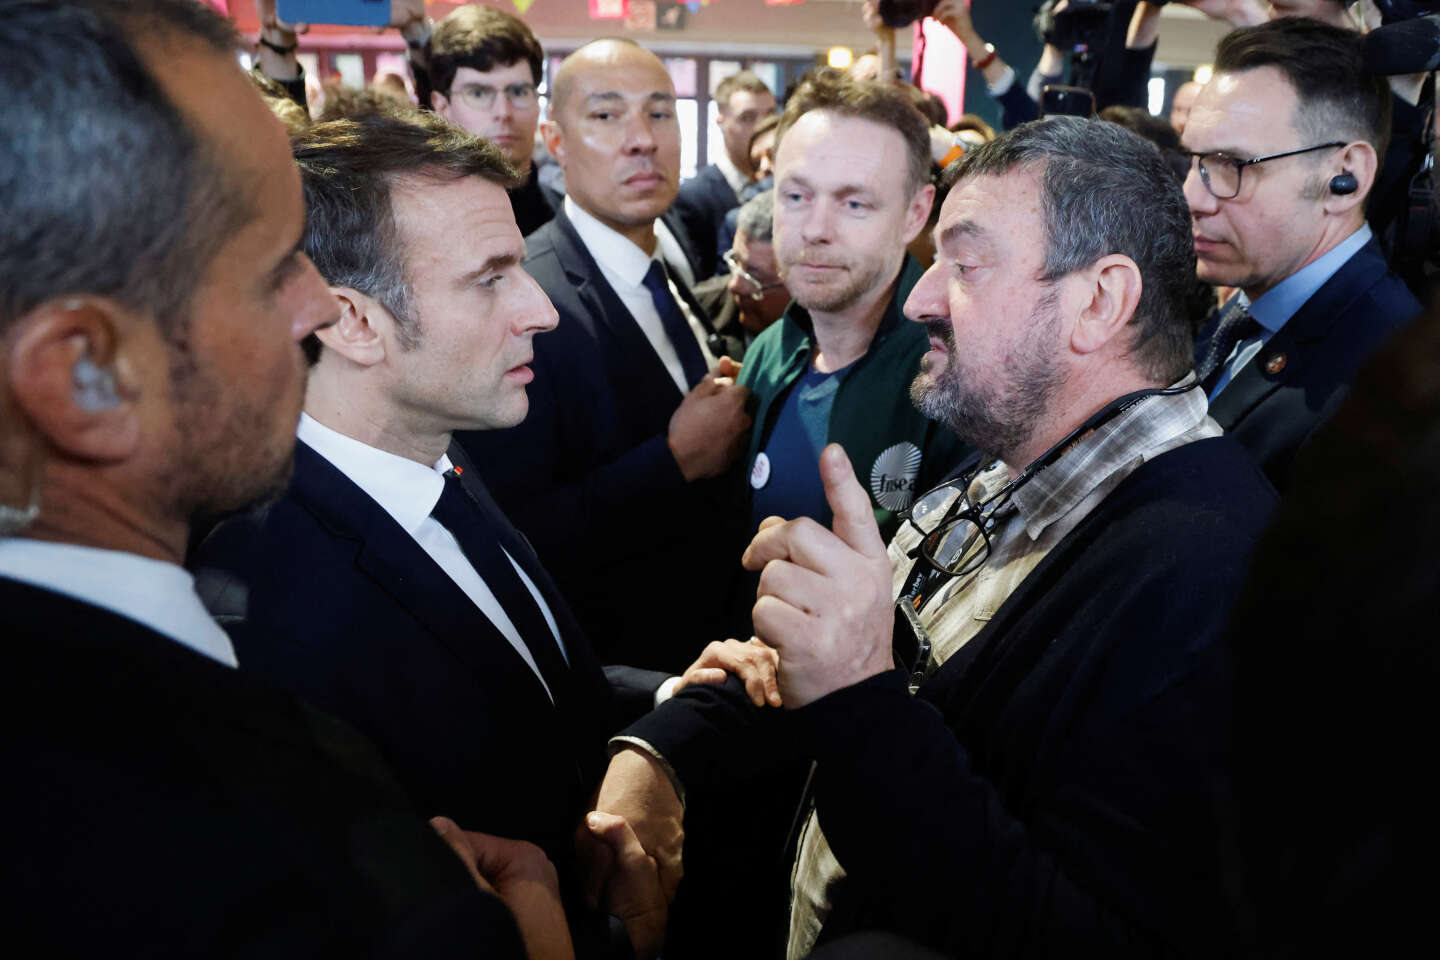 Au Salon de l’agriculture, Emmanuel Macron creuse un peu plus le gouffre avec les défenseurs de l’environnement